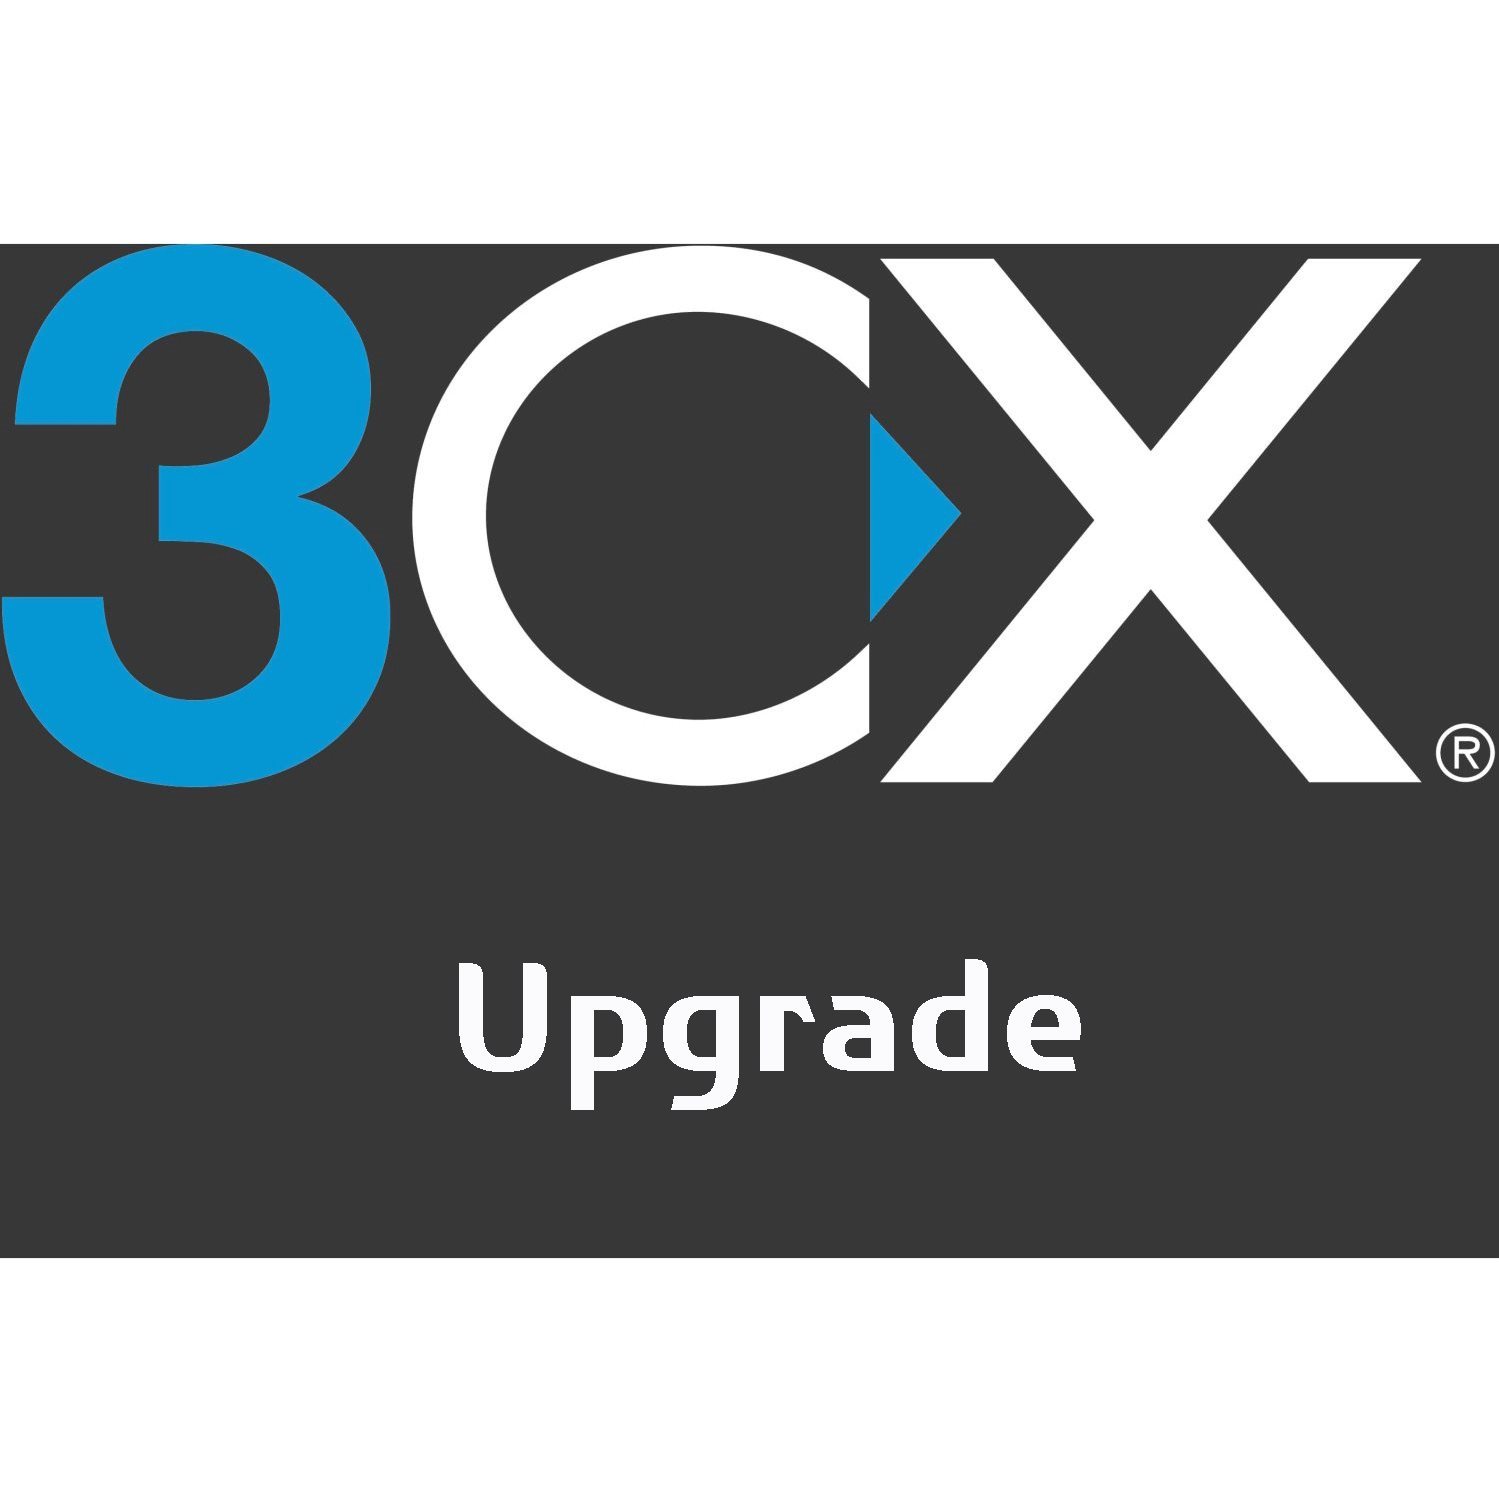  Logiciel IPBX 3CX Upgrade d'une licence 3CX existante sur mesure